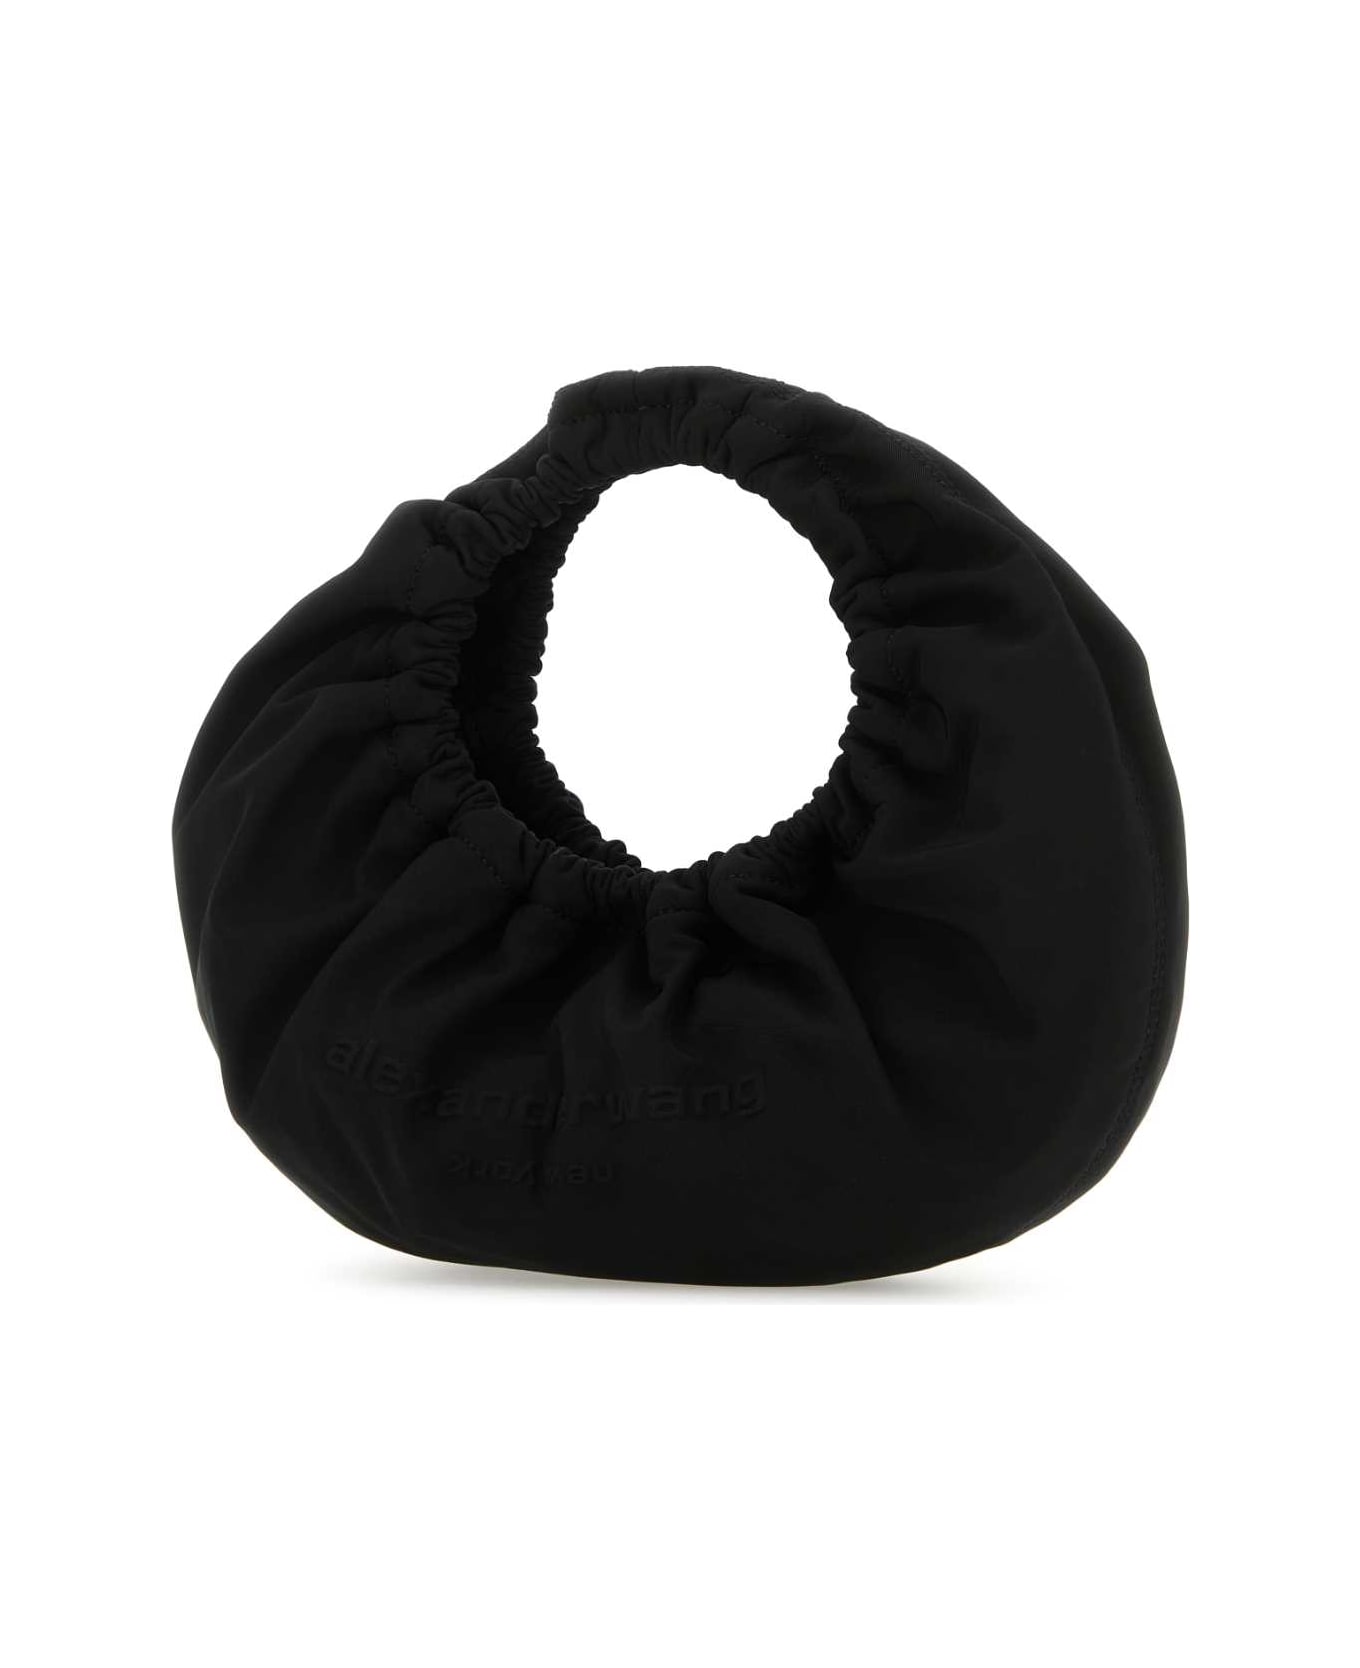 Alexander Wang Black Fabric Crescent Small Handbag - Black